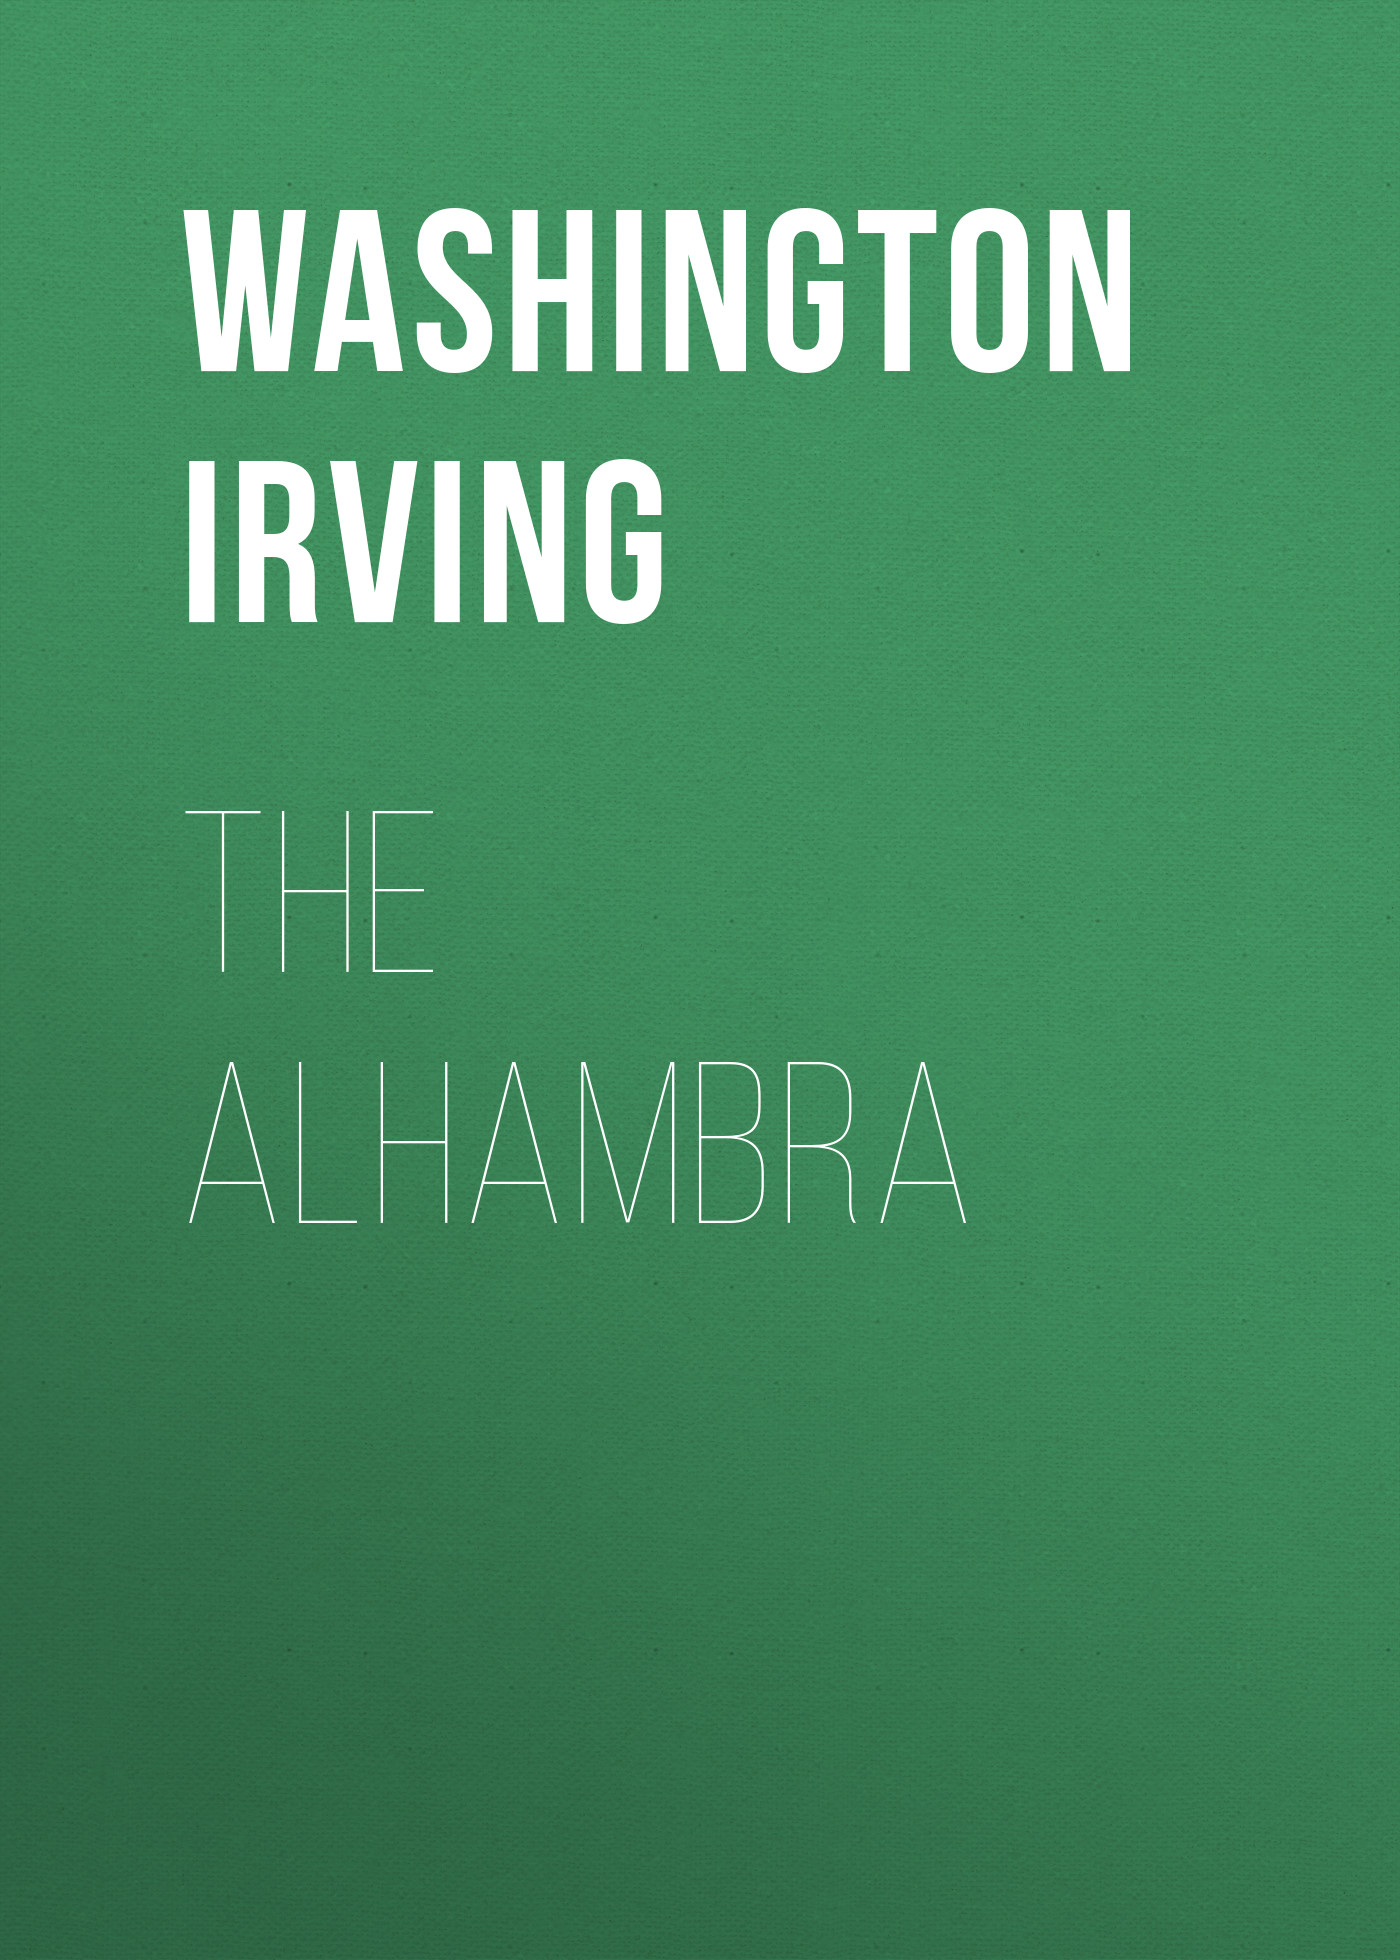 Книга The Alhambra из серии , созданная Washington Irving, может относится к жанру Литература 19 века, Зарубежная старинная литература, Зарубежная классика. Стоимость электронной книги The Alhambra с идентификатором 25229868 составляет 0 руб.